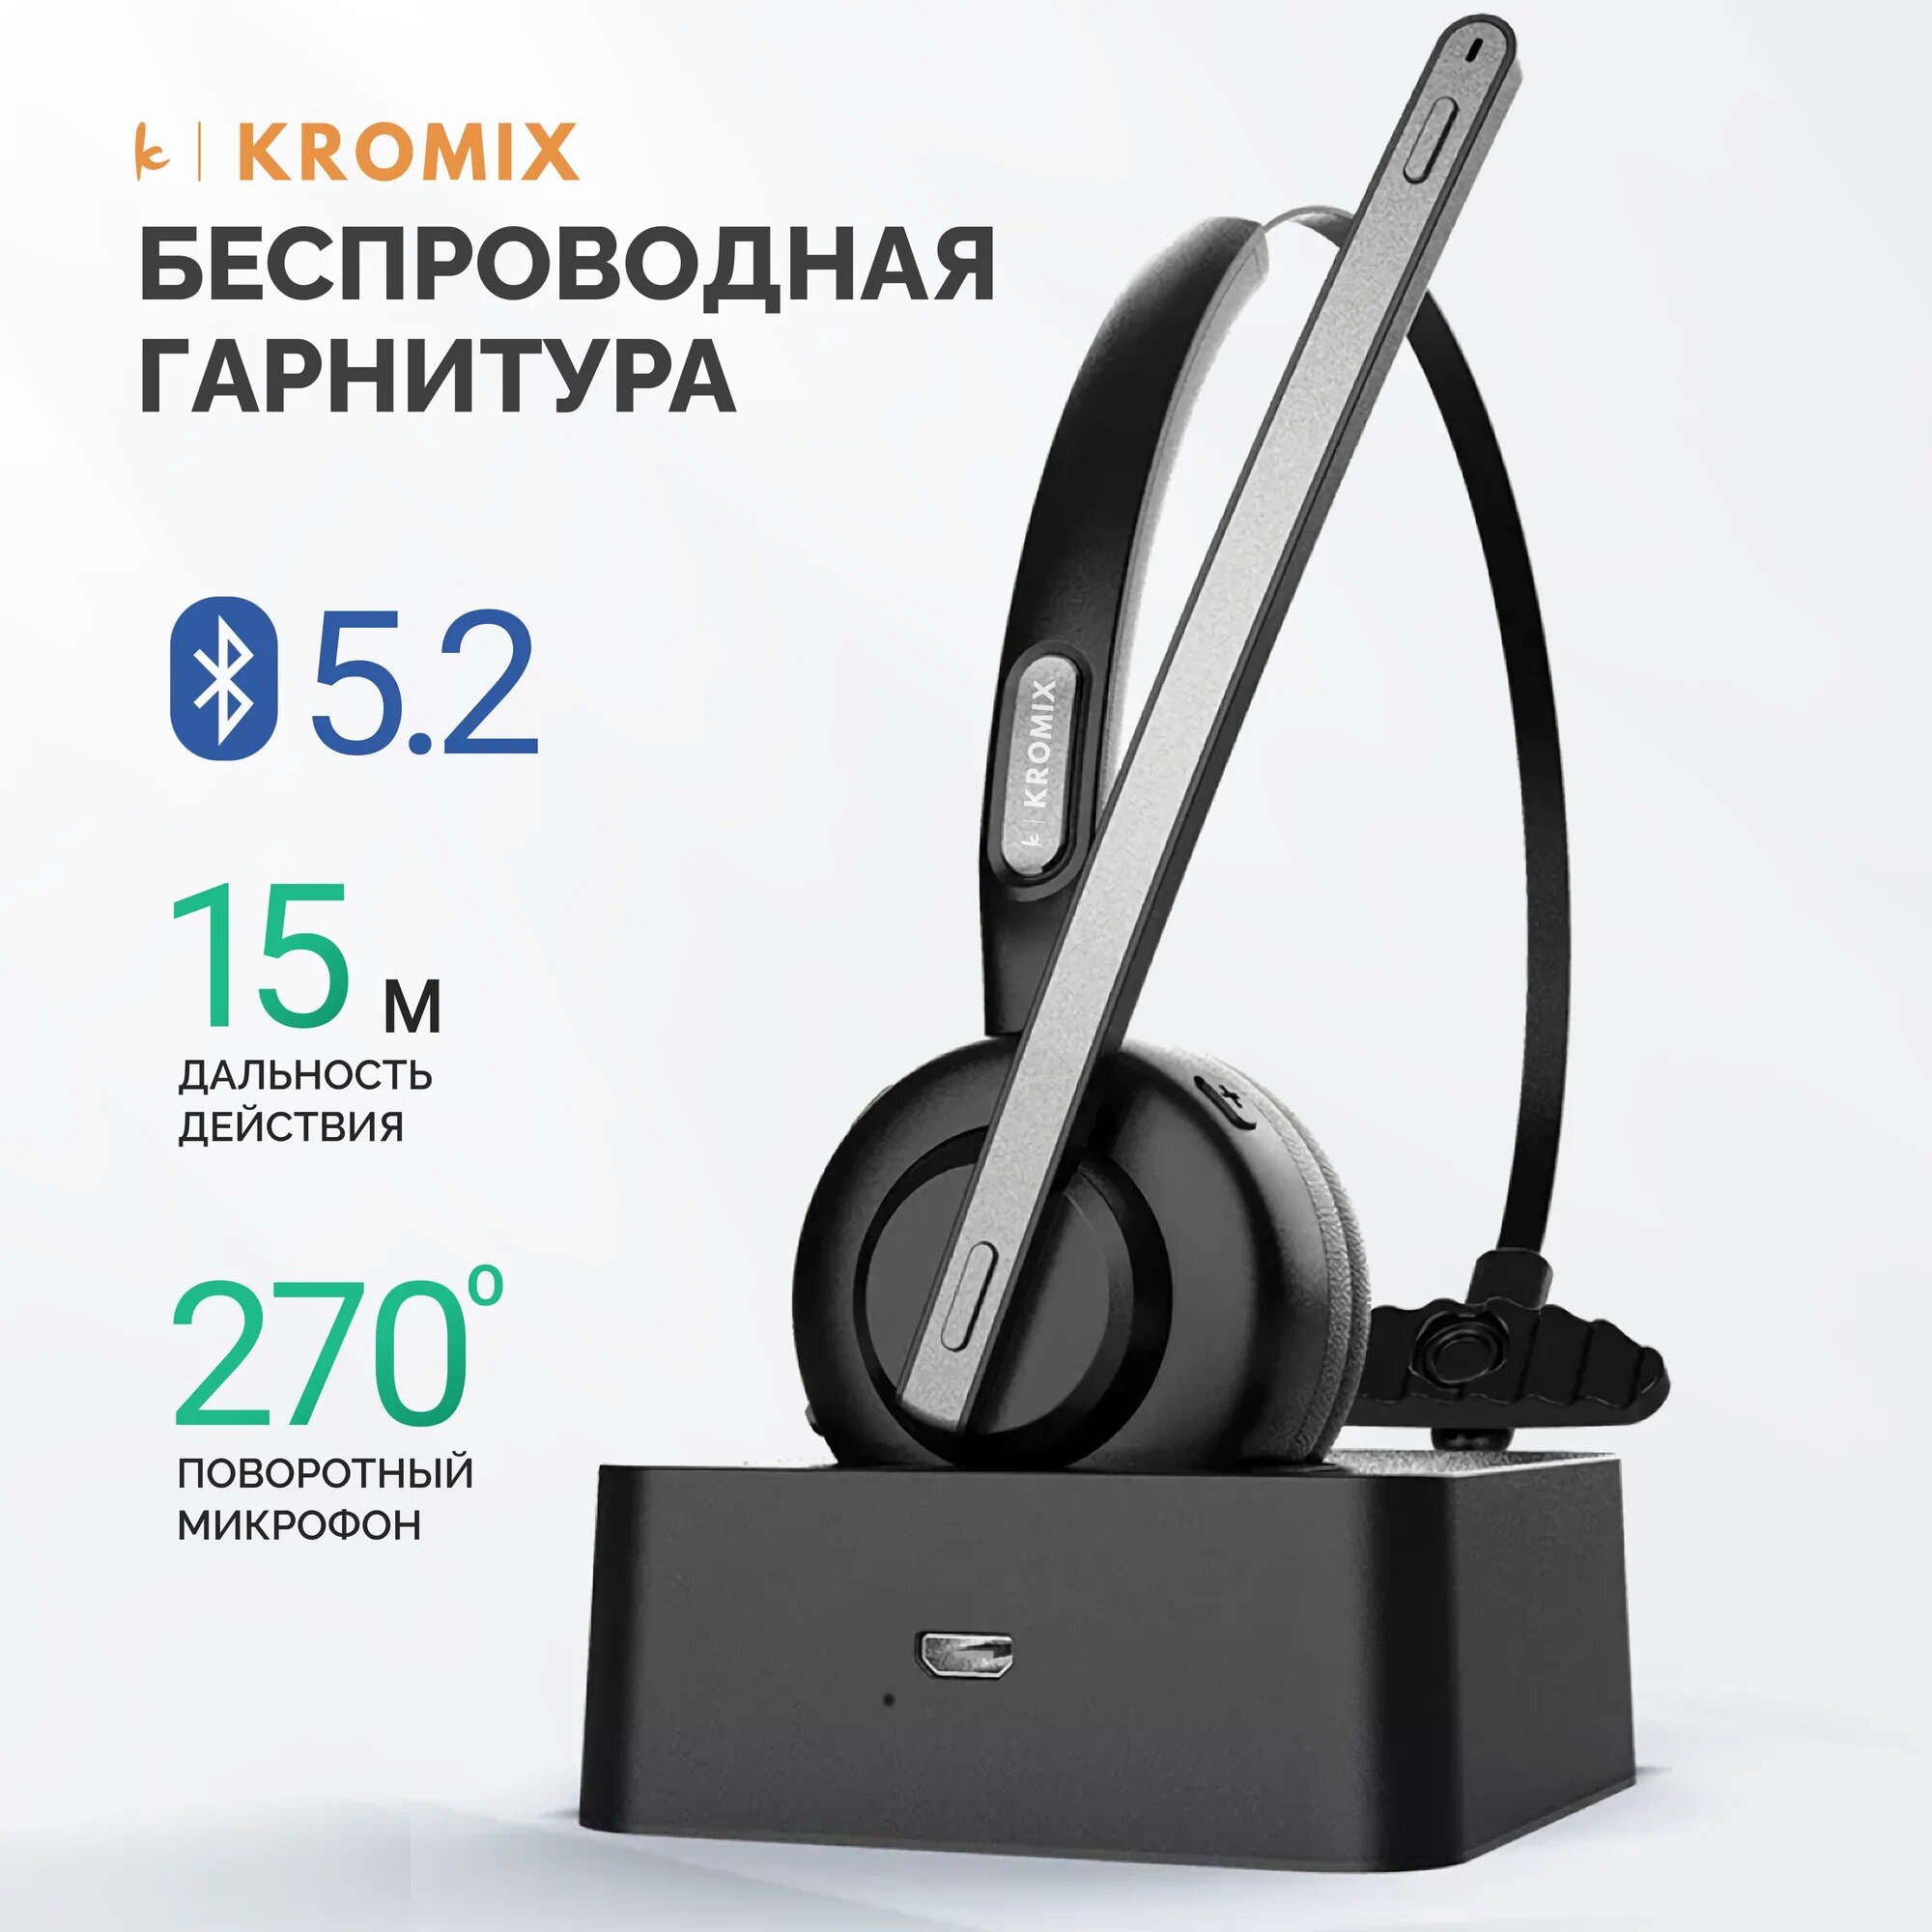 Беспроводная гарнитура для смартфона "Kromix" К221